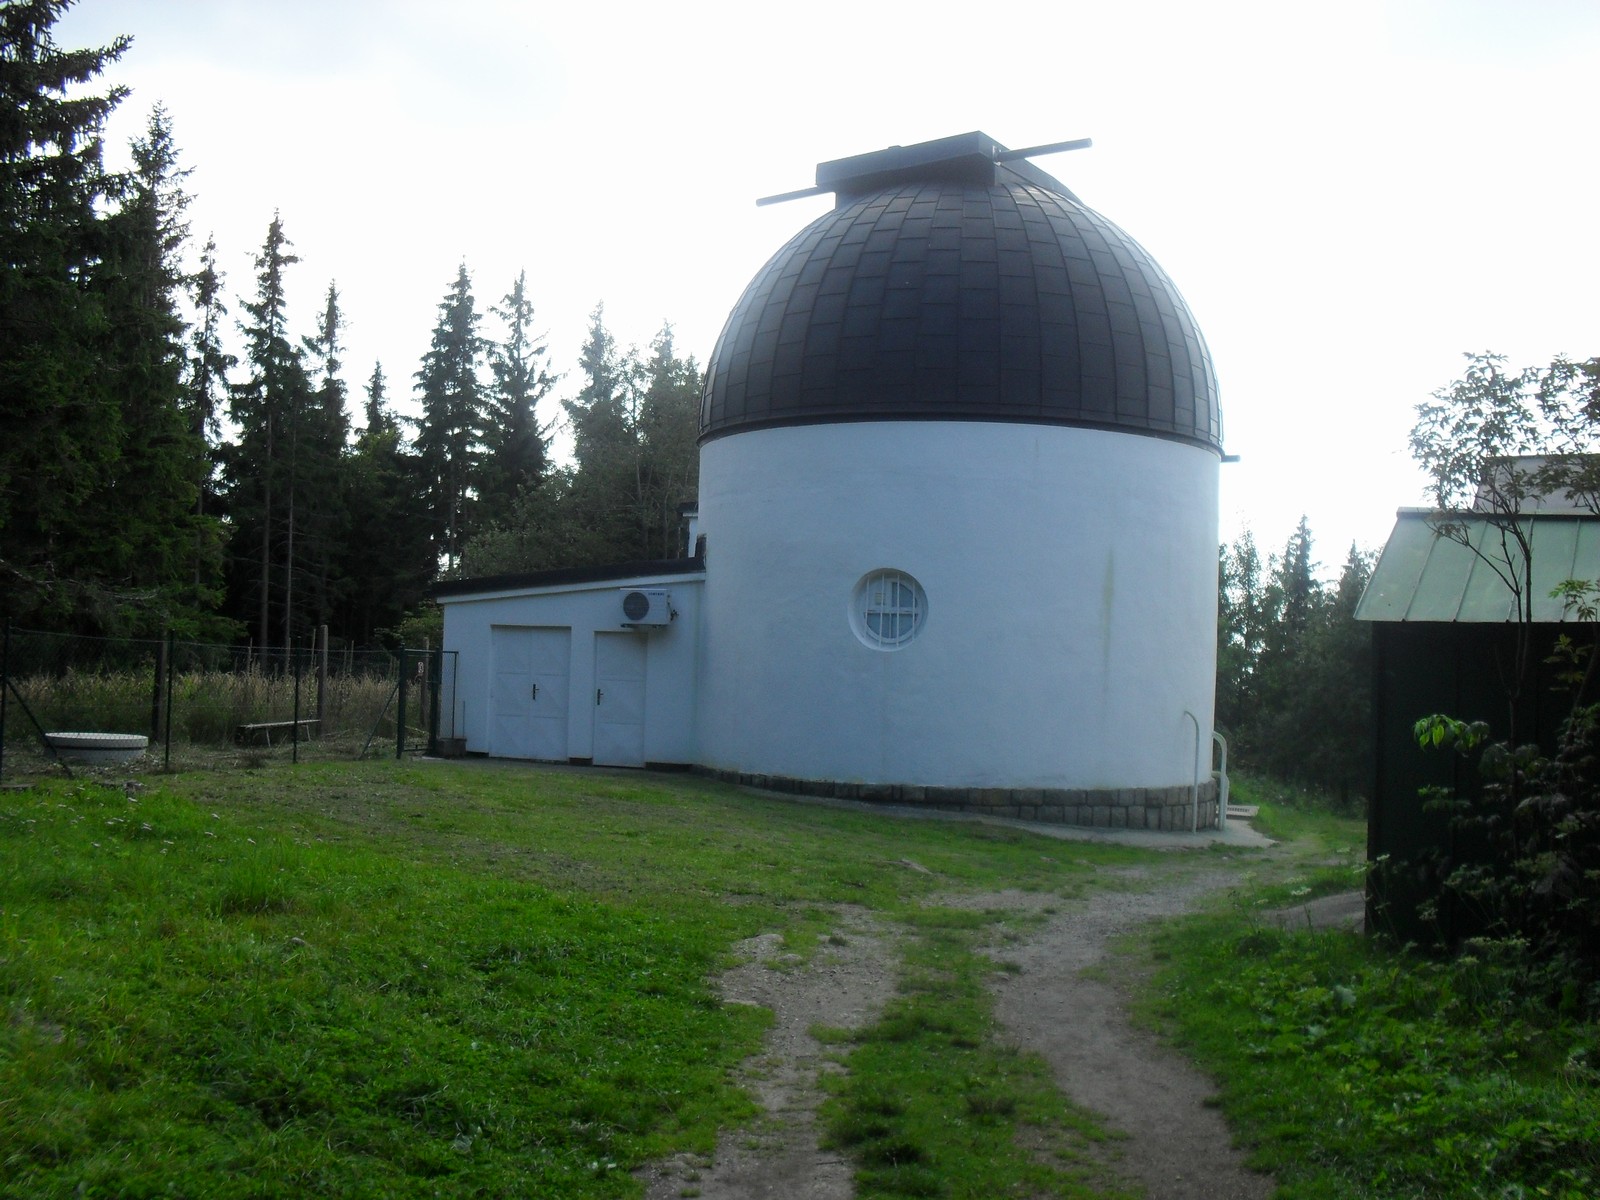 Klet' Observatory